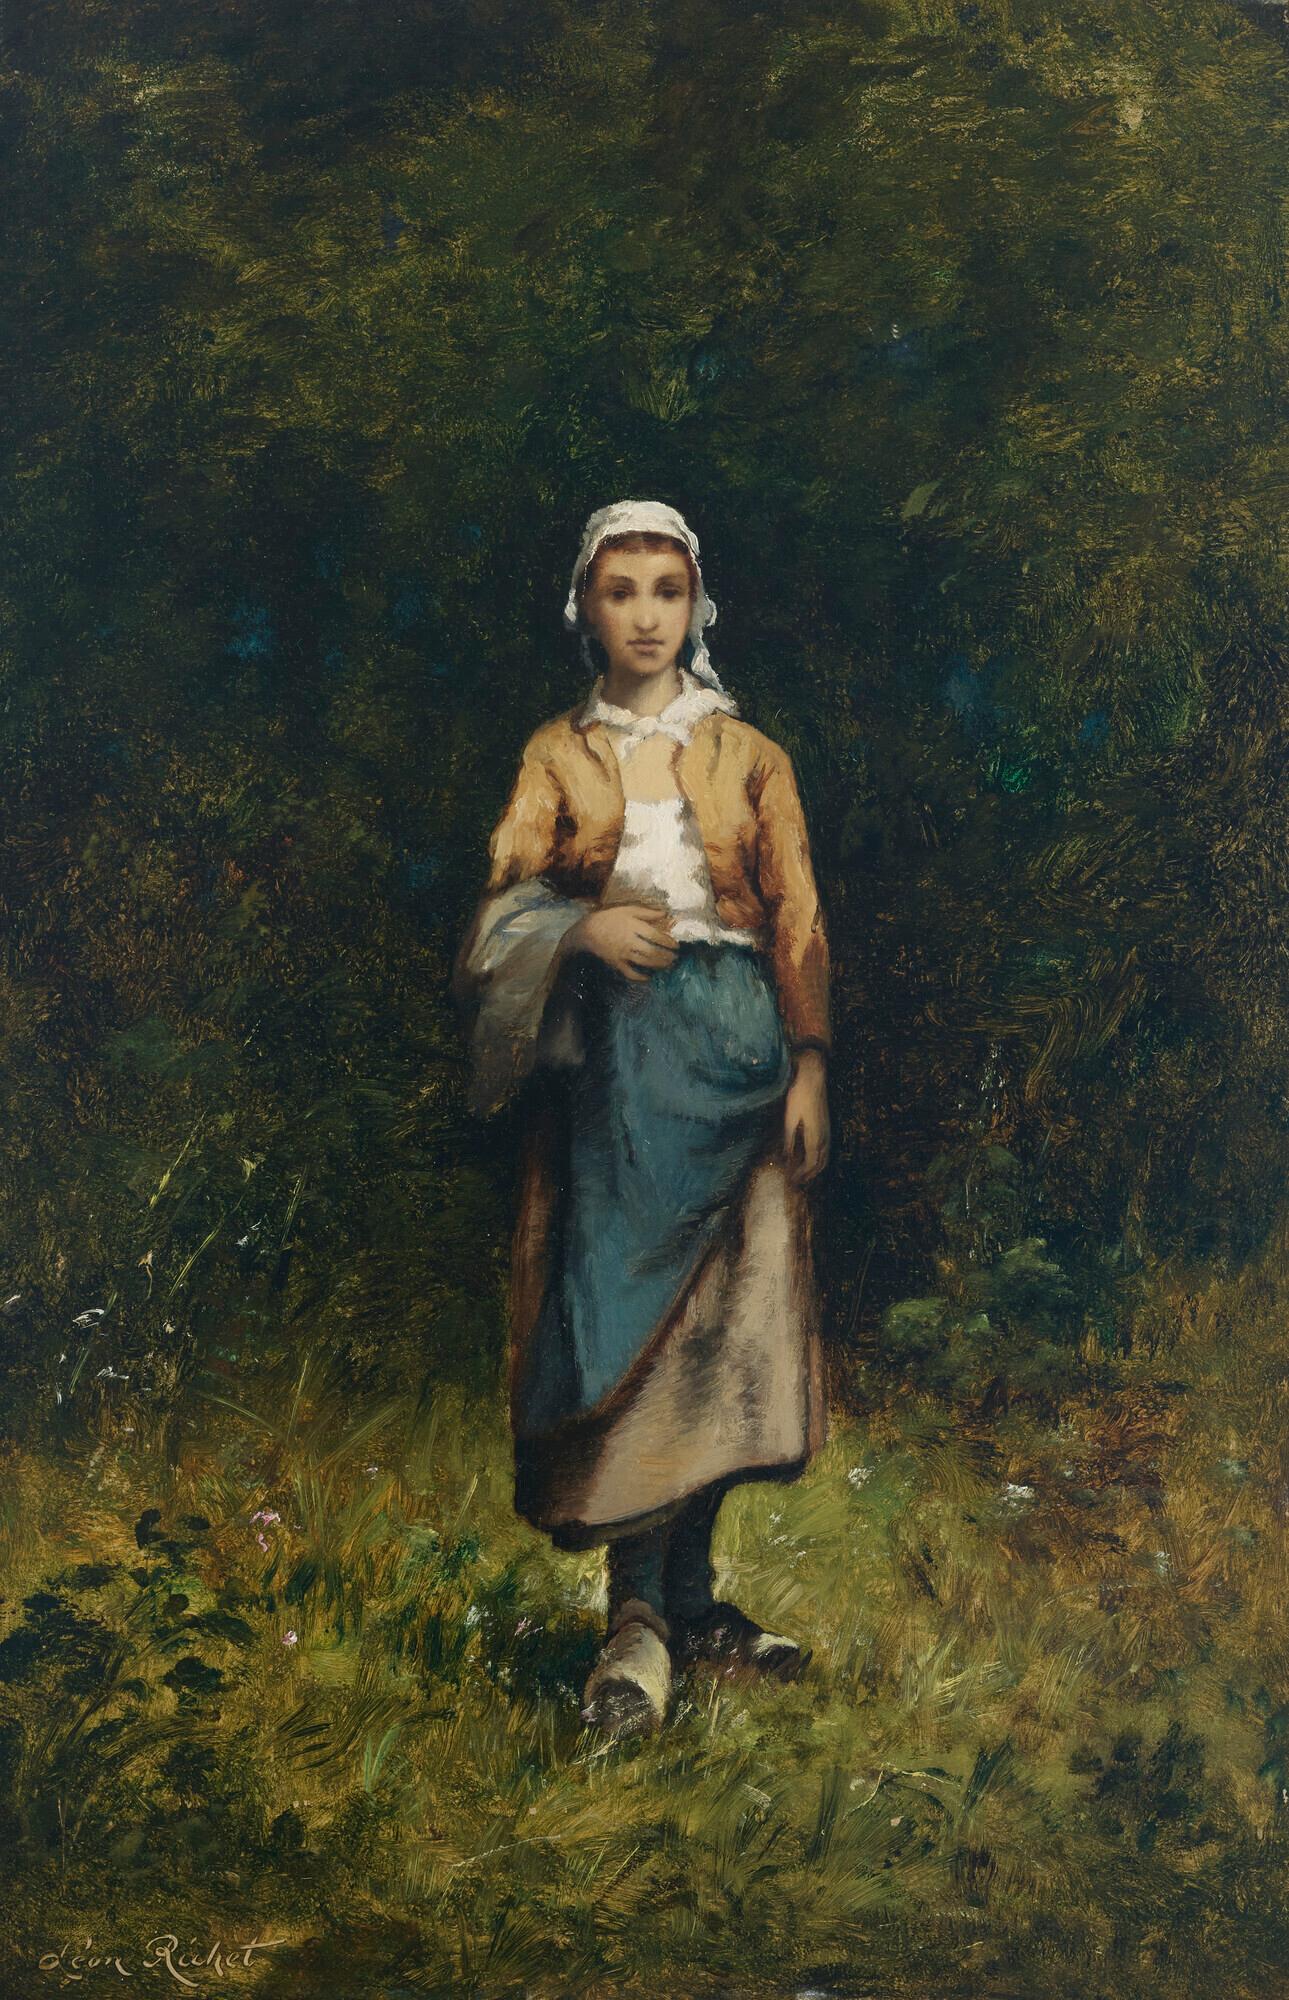 Portrait Painting Leon Richet - Paysanne dans un bois